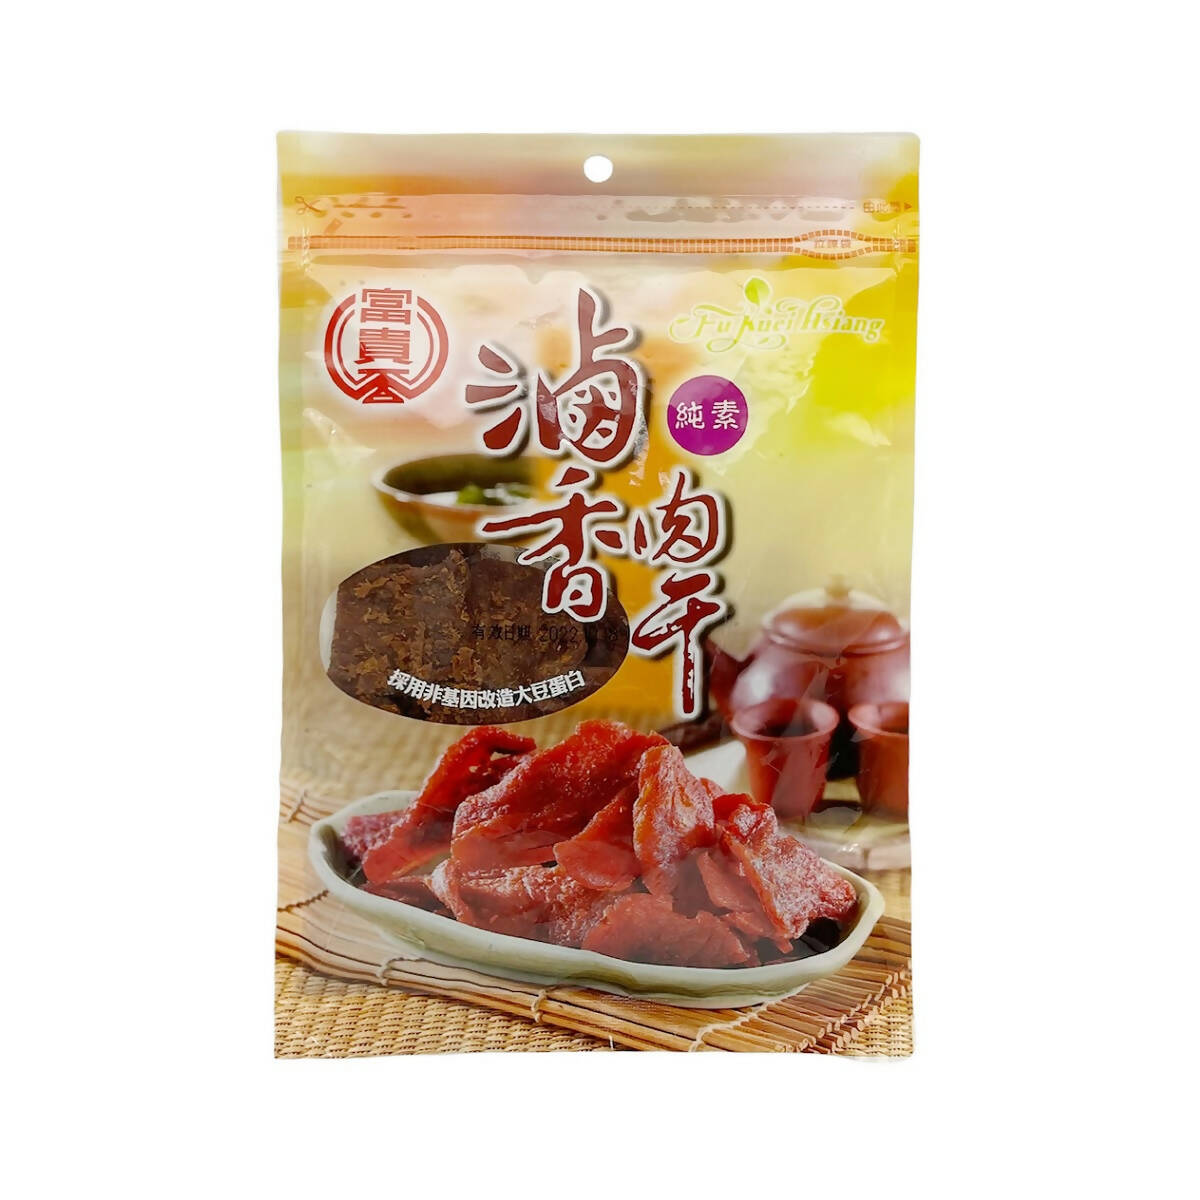 Taiwan Direct Mail【Fuguixiang】 FU KUEI HIANG Braised Dried Pork (Vegan) 300g 